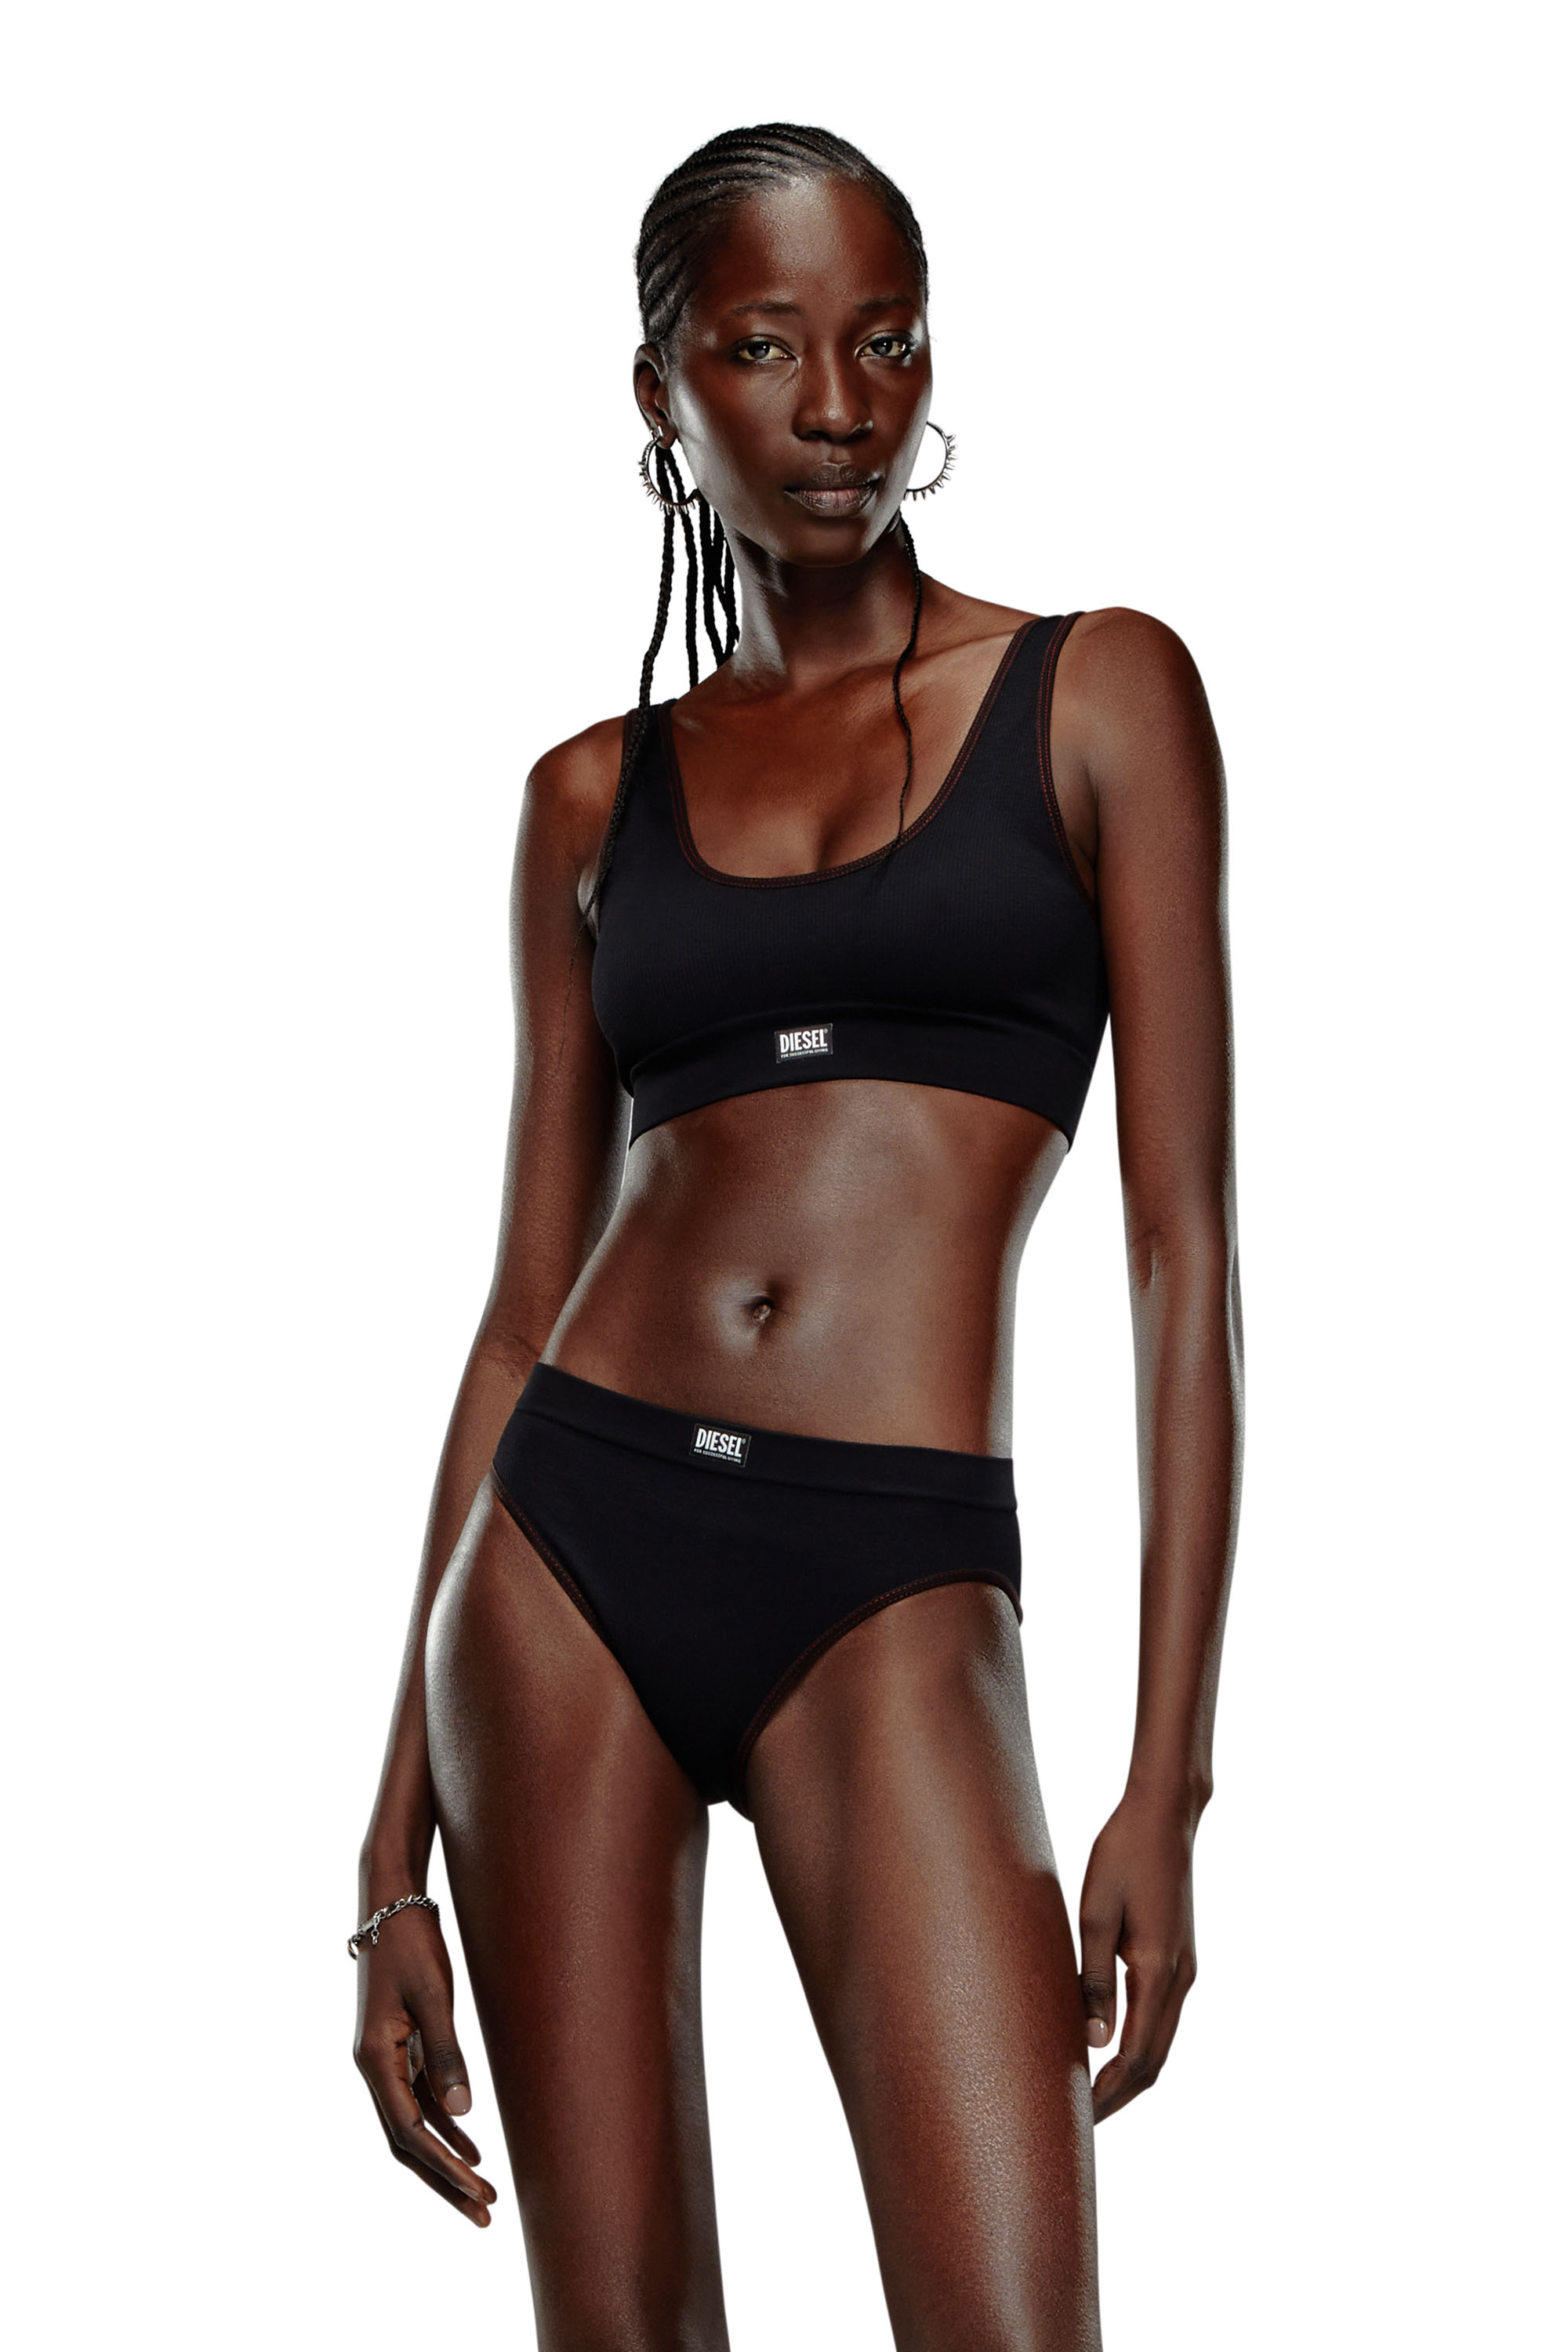 DIESEL: Lingerie woman - Black  DIESEL lingerie A131220NJAP online at